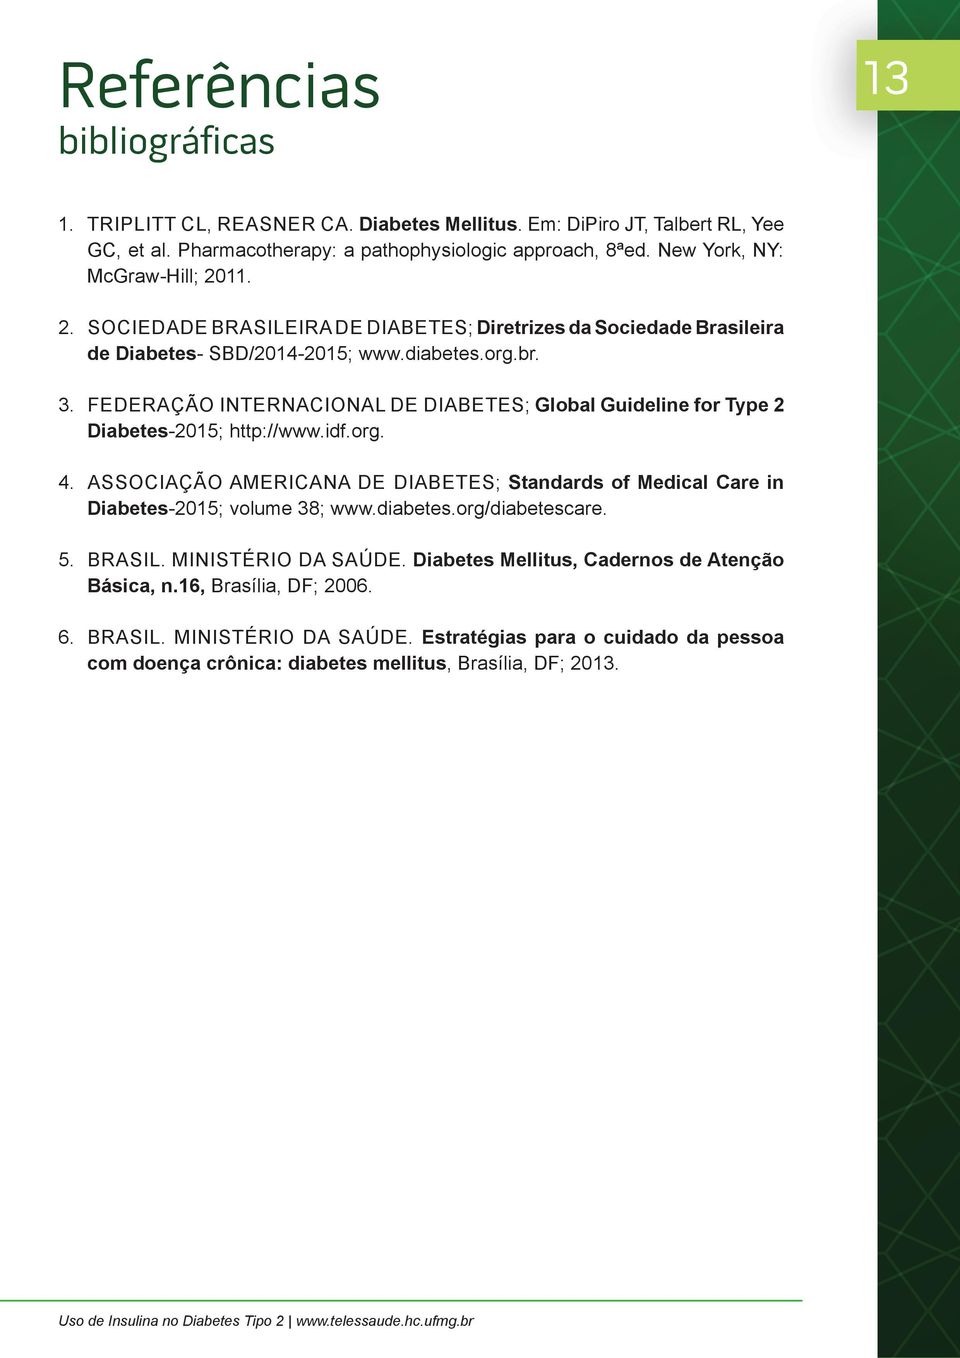 FEDERAÇÃO INTERNACIONAL DE DIABETES; Global Guideline for Type 2 Diabetes-2015; http://www.idf.org. 4. ASSOCIAÇÃO AMERICANA DE DIABETES; Standards of Medical Care in Diabetes-2015; volume 38; www.